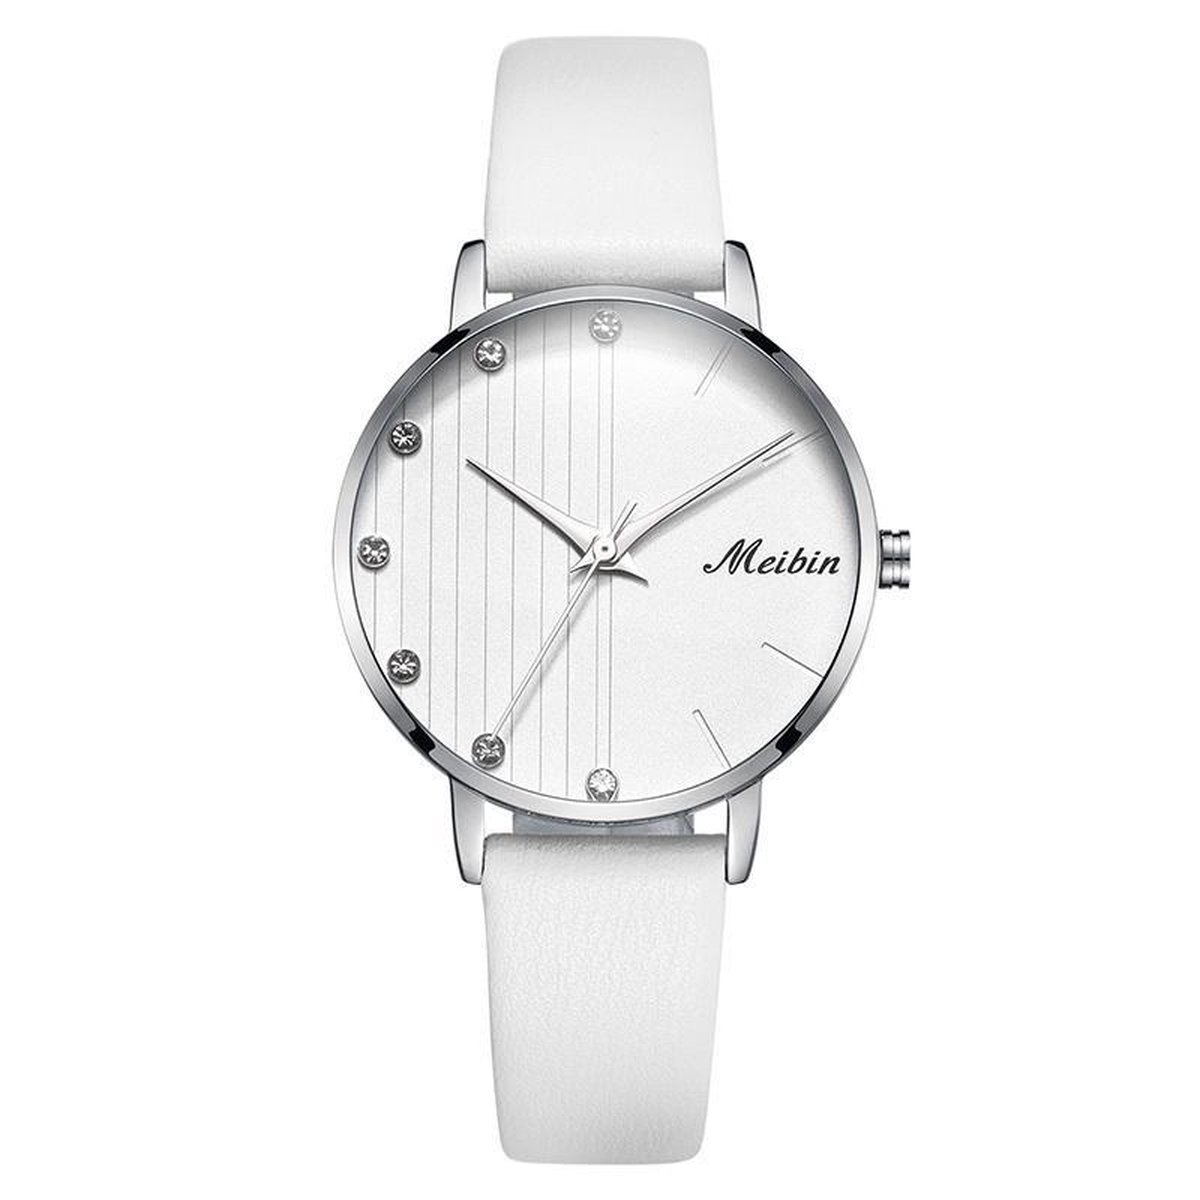 Longbo - Meibin - Dames Horloge - Wit/Zilver/Wit - Ø 32mmb(Productvideo)